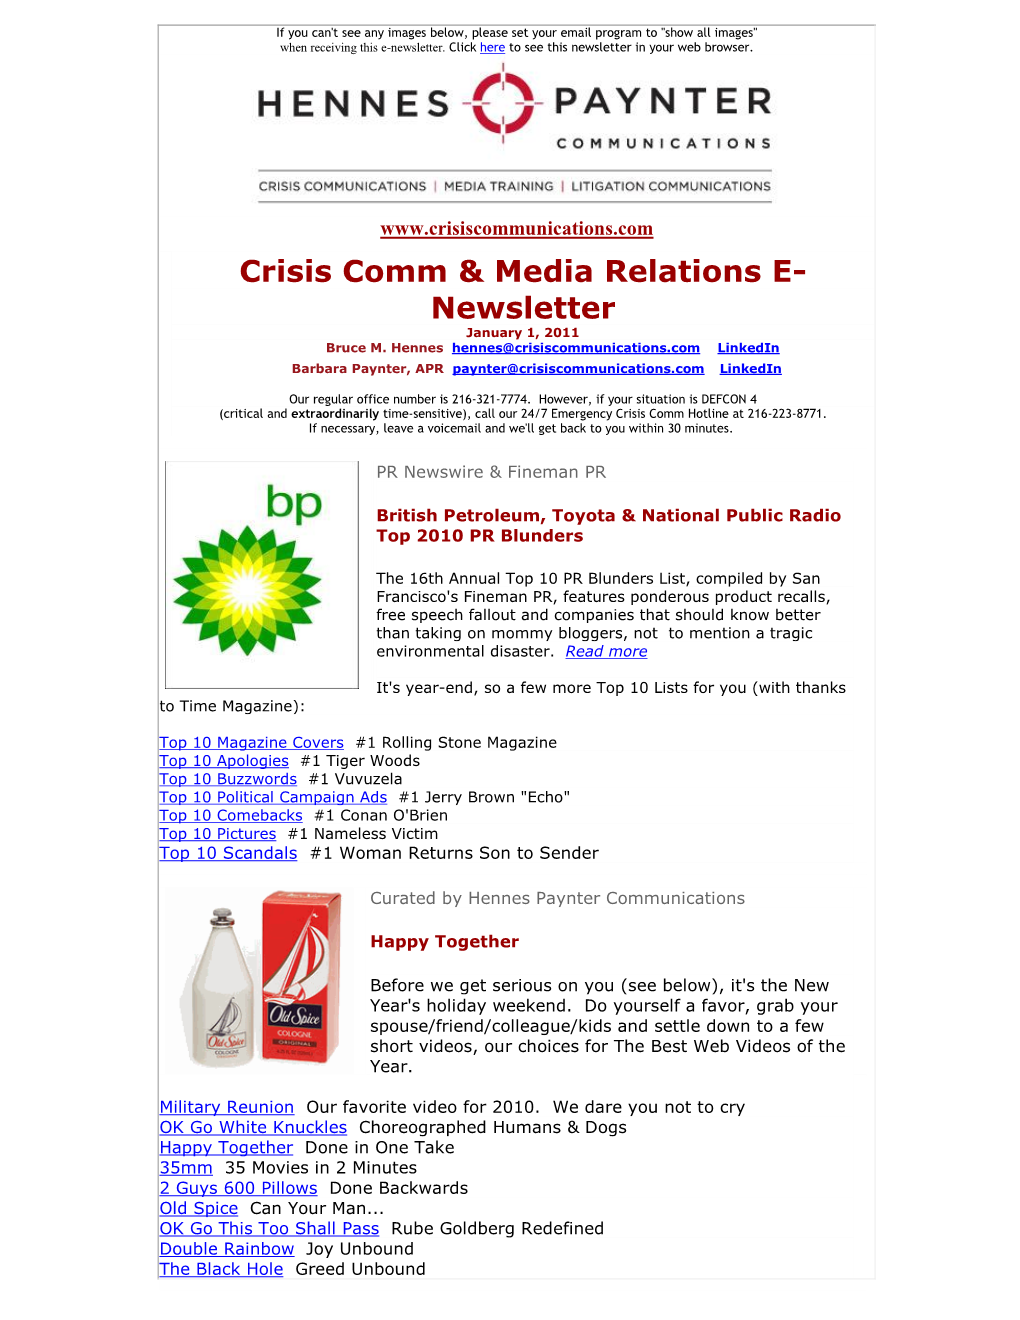 Crisis Comm & Media Relations E- Newsletter